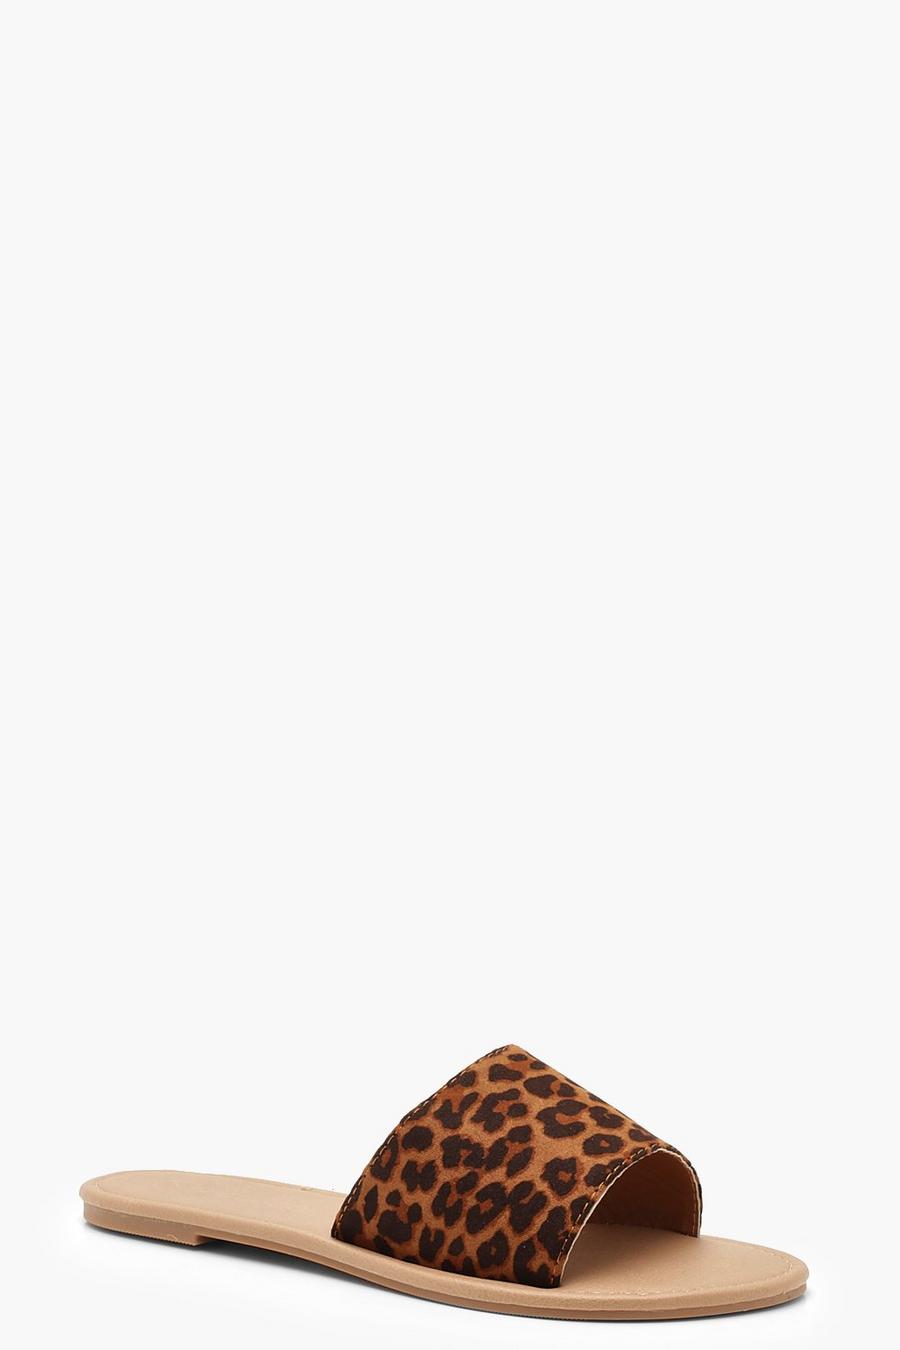 Basic Leopard Sliders